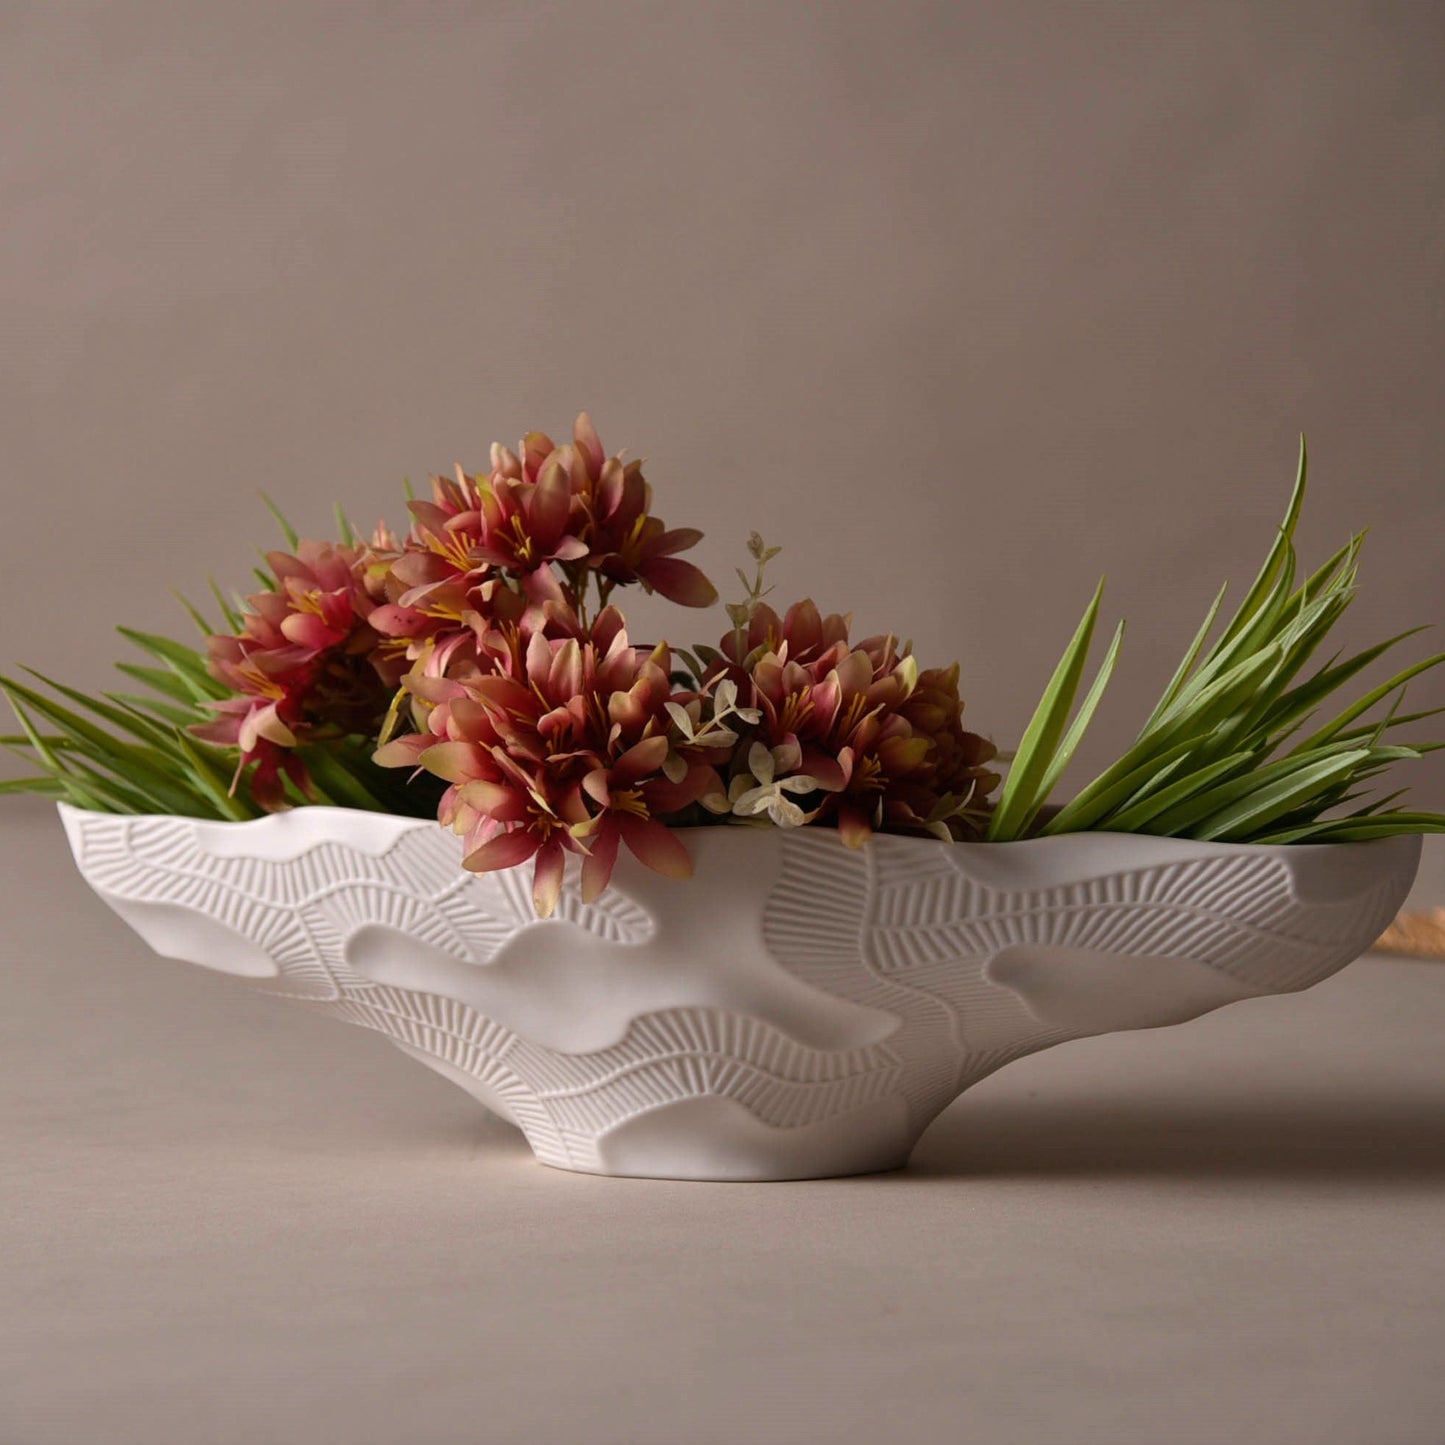 Marmor Porcelain White Table Vase